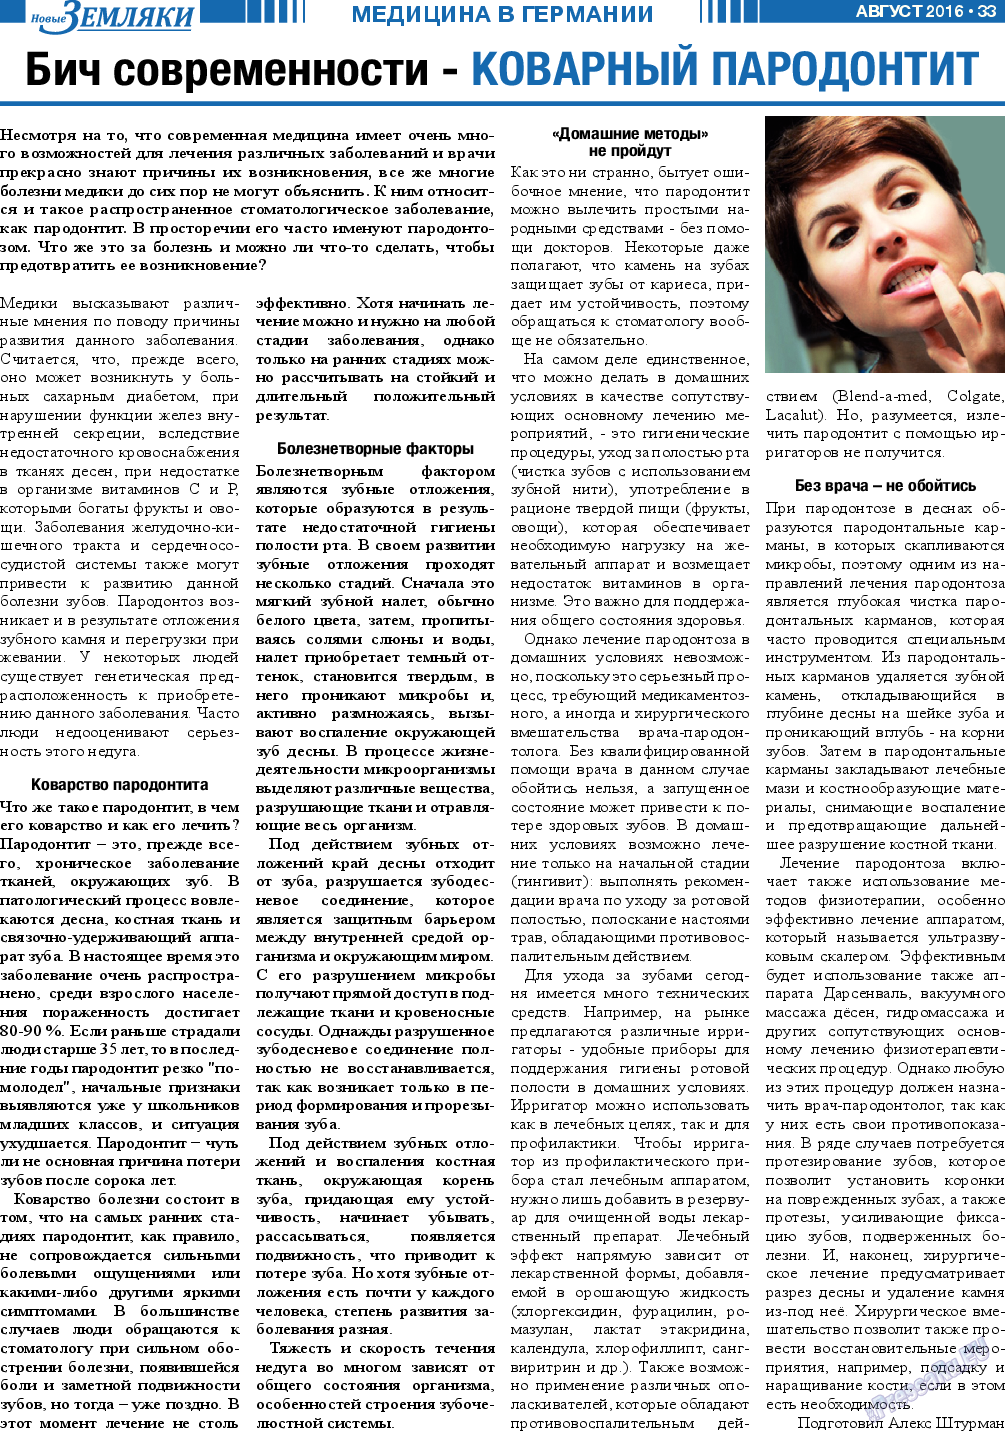 Новые Земляки, газета. 2016 №8 стр.33